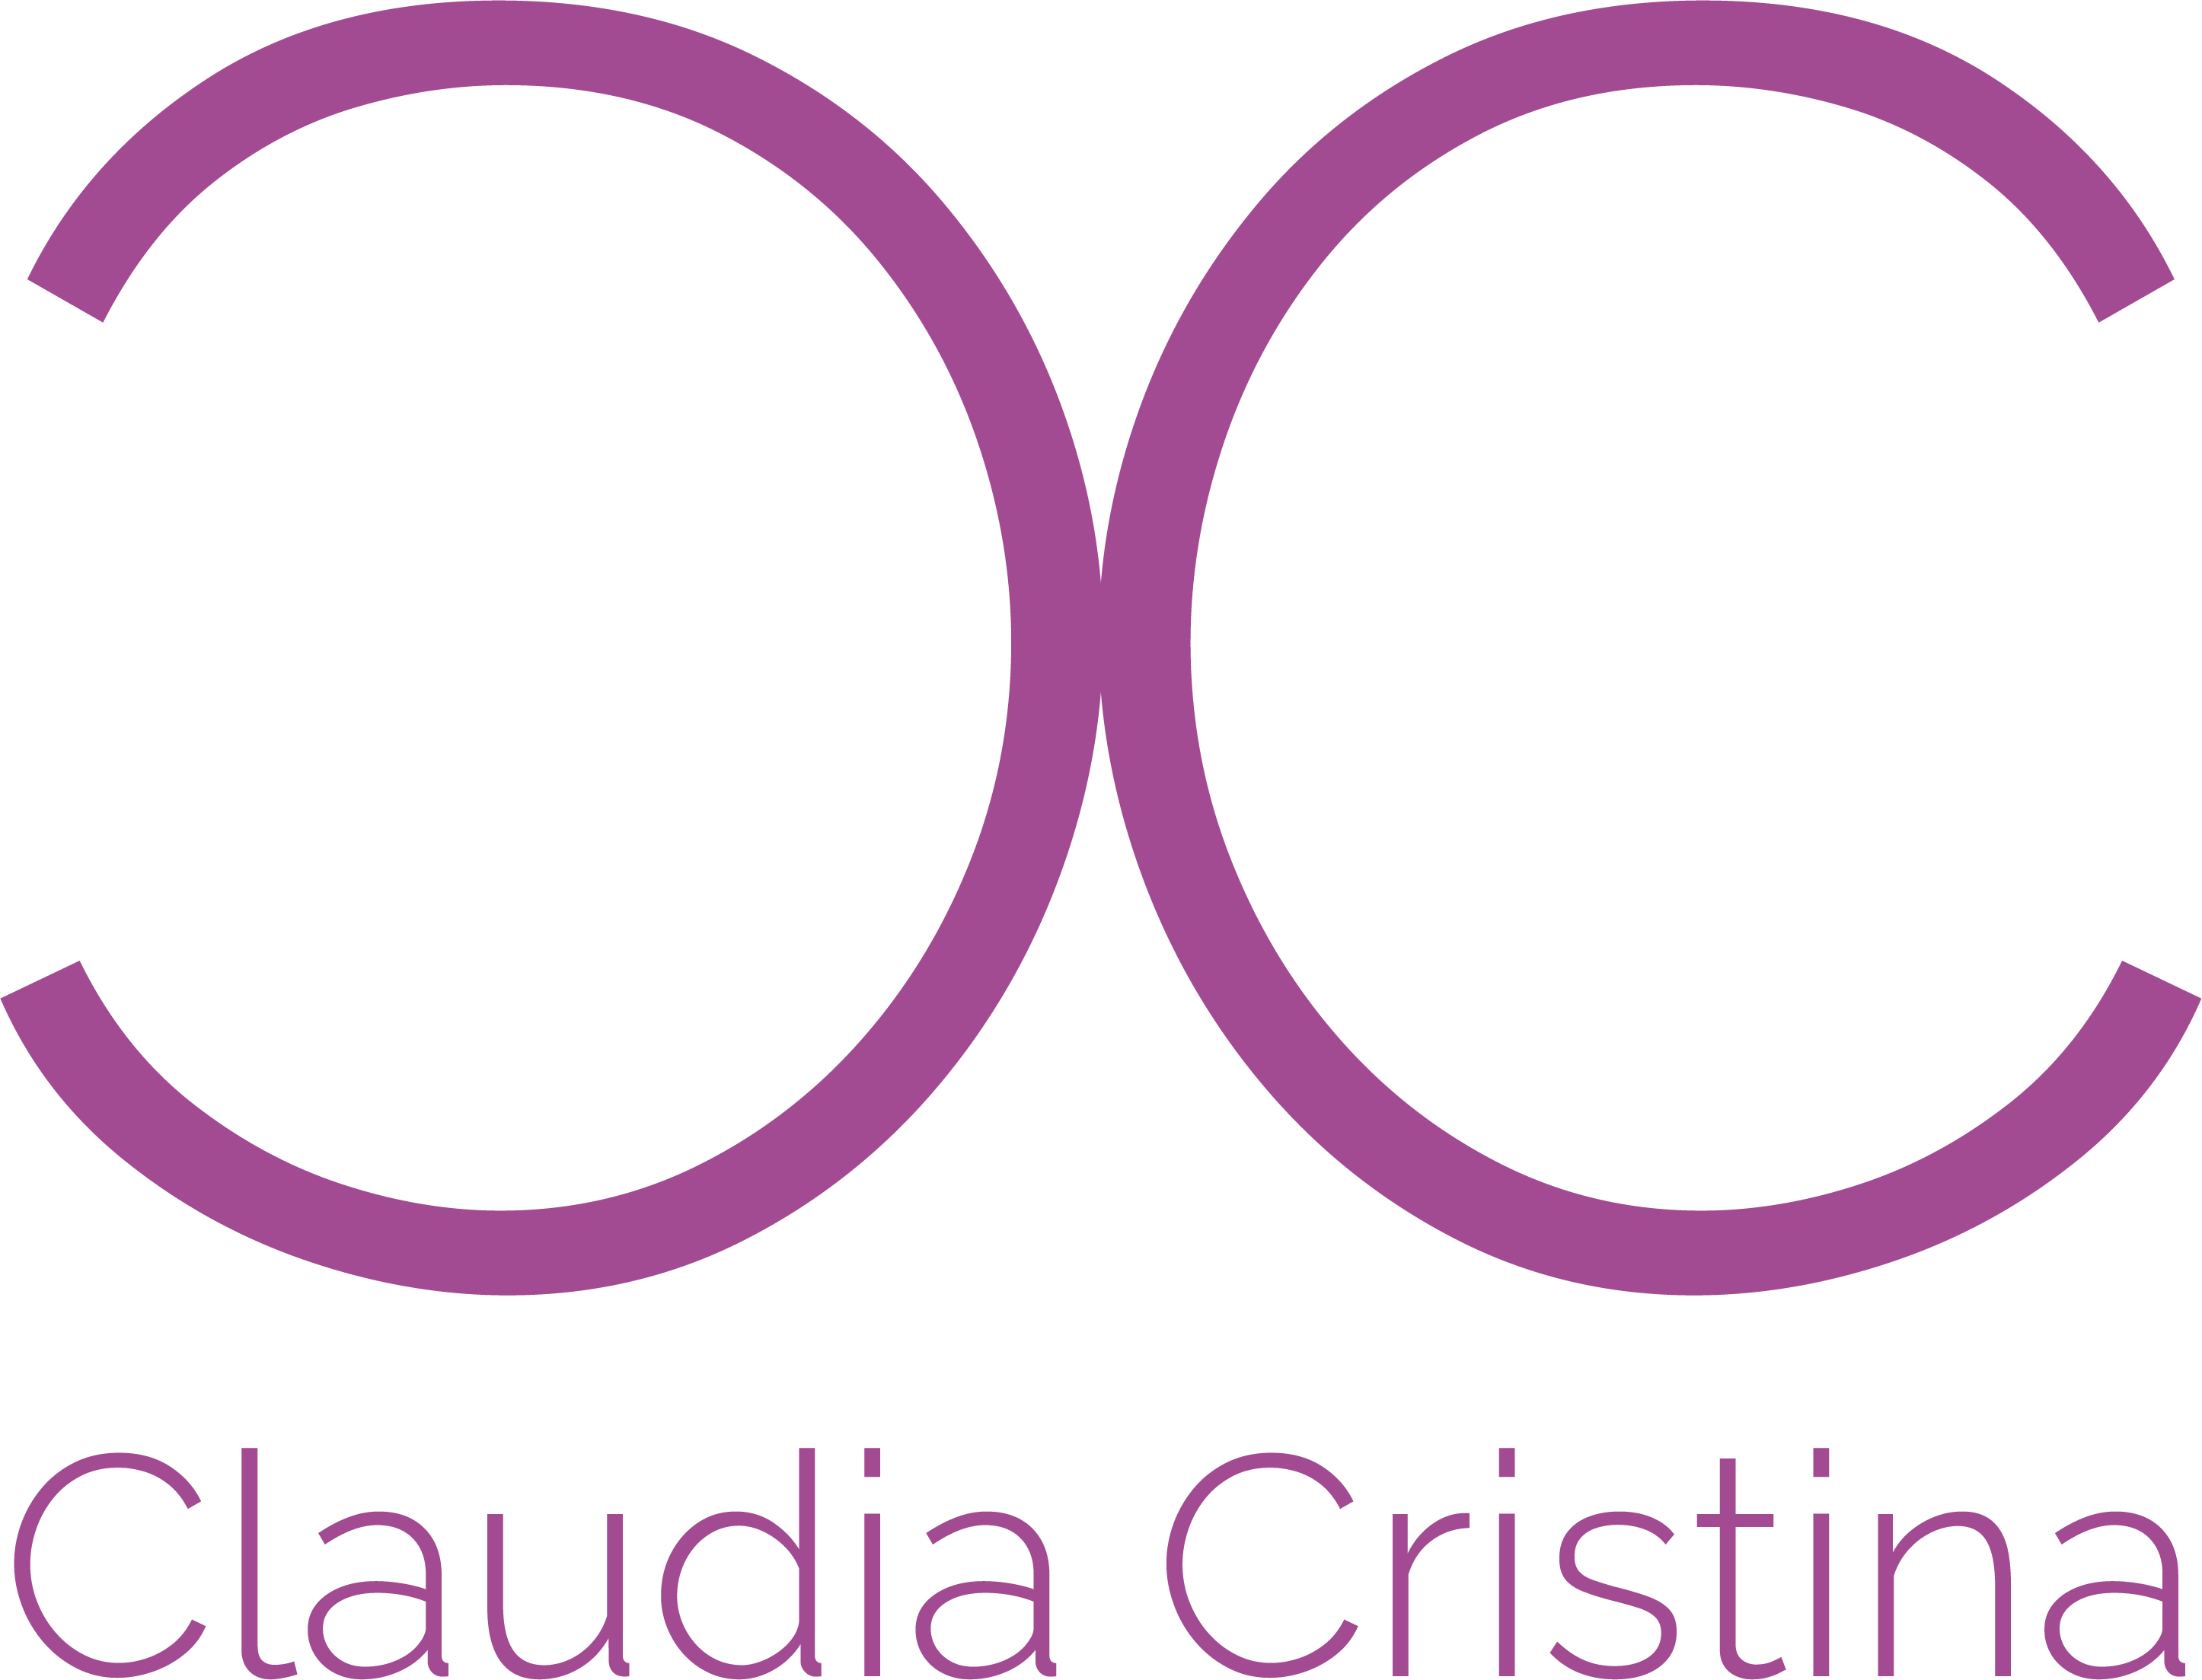 Claudia cristina